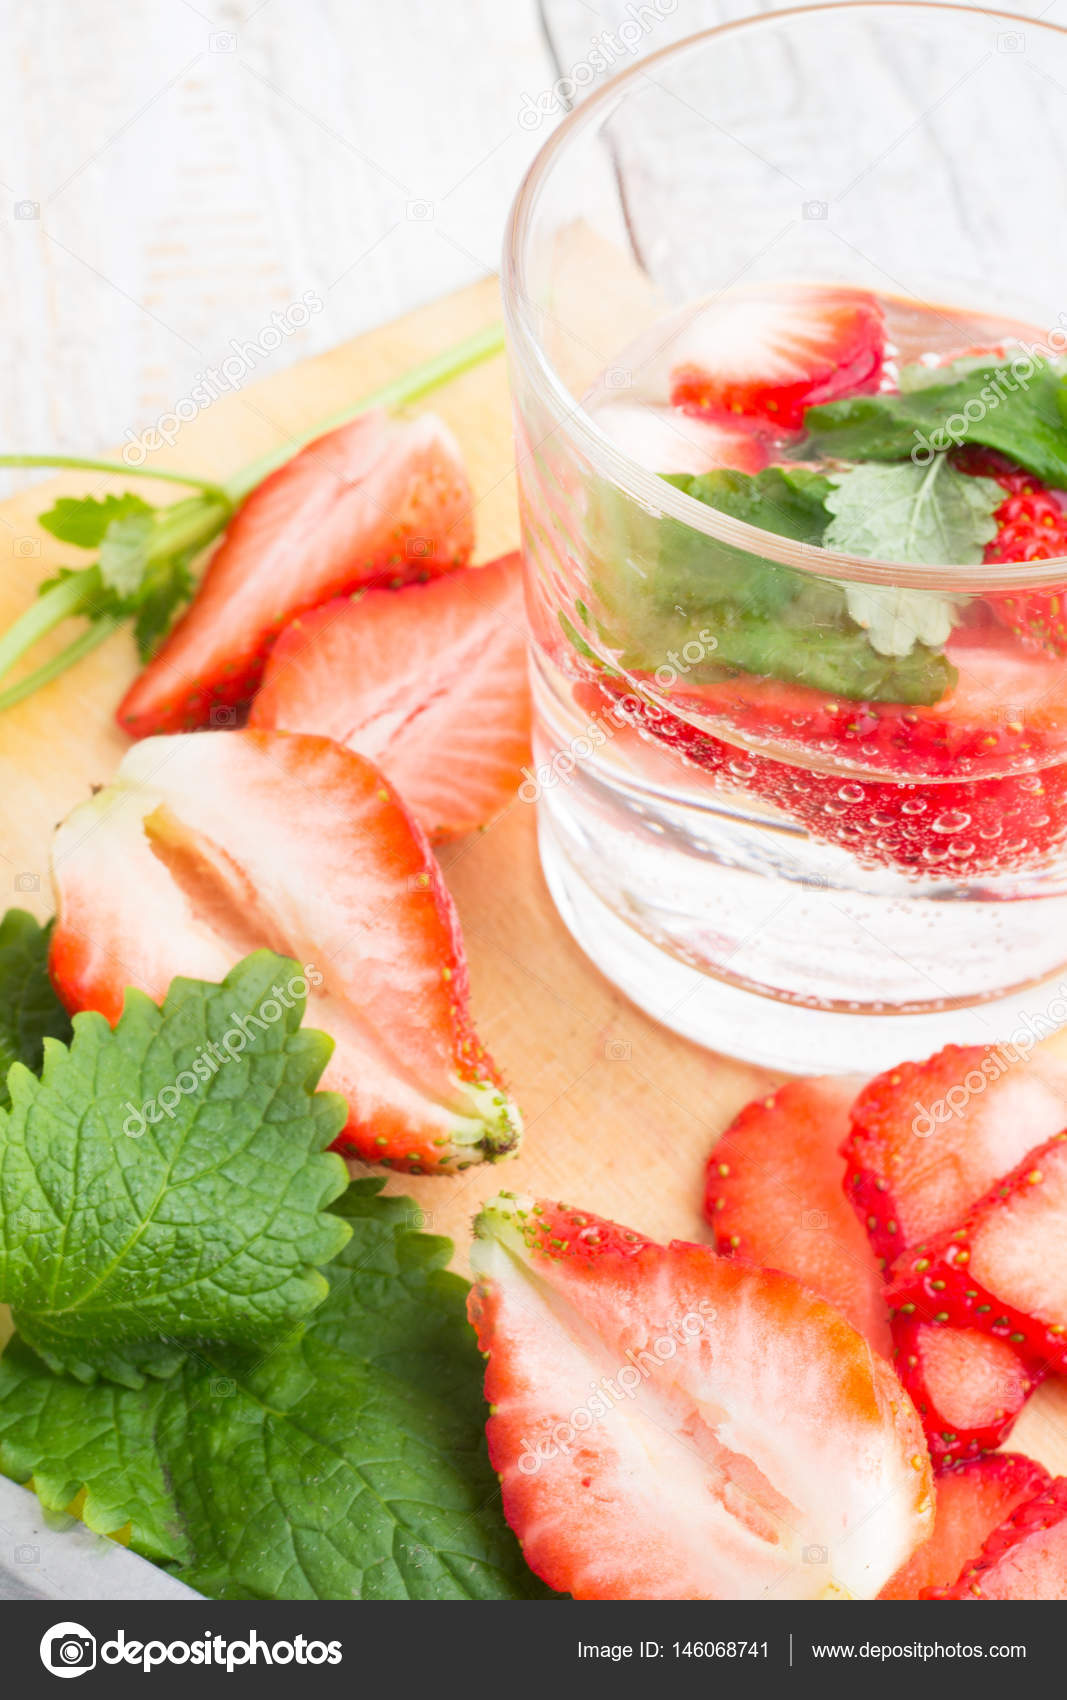 Ein Glas Erdbeere und Minze trinken — Stockfoto © ytochka89 #146068741